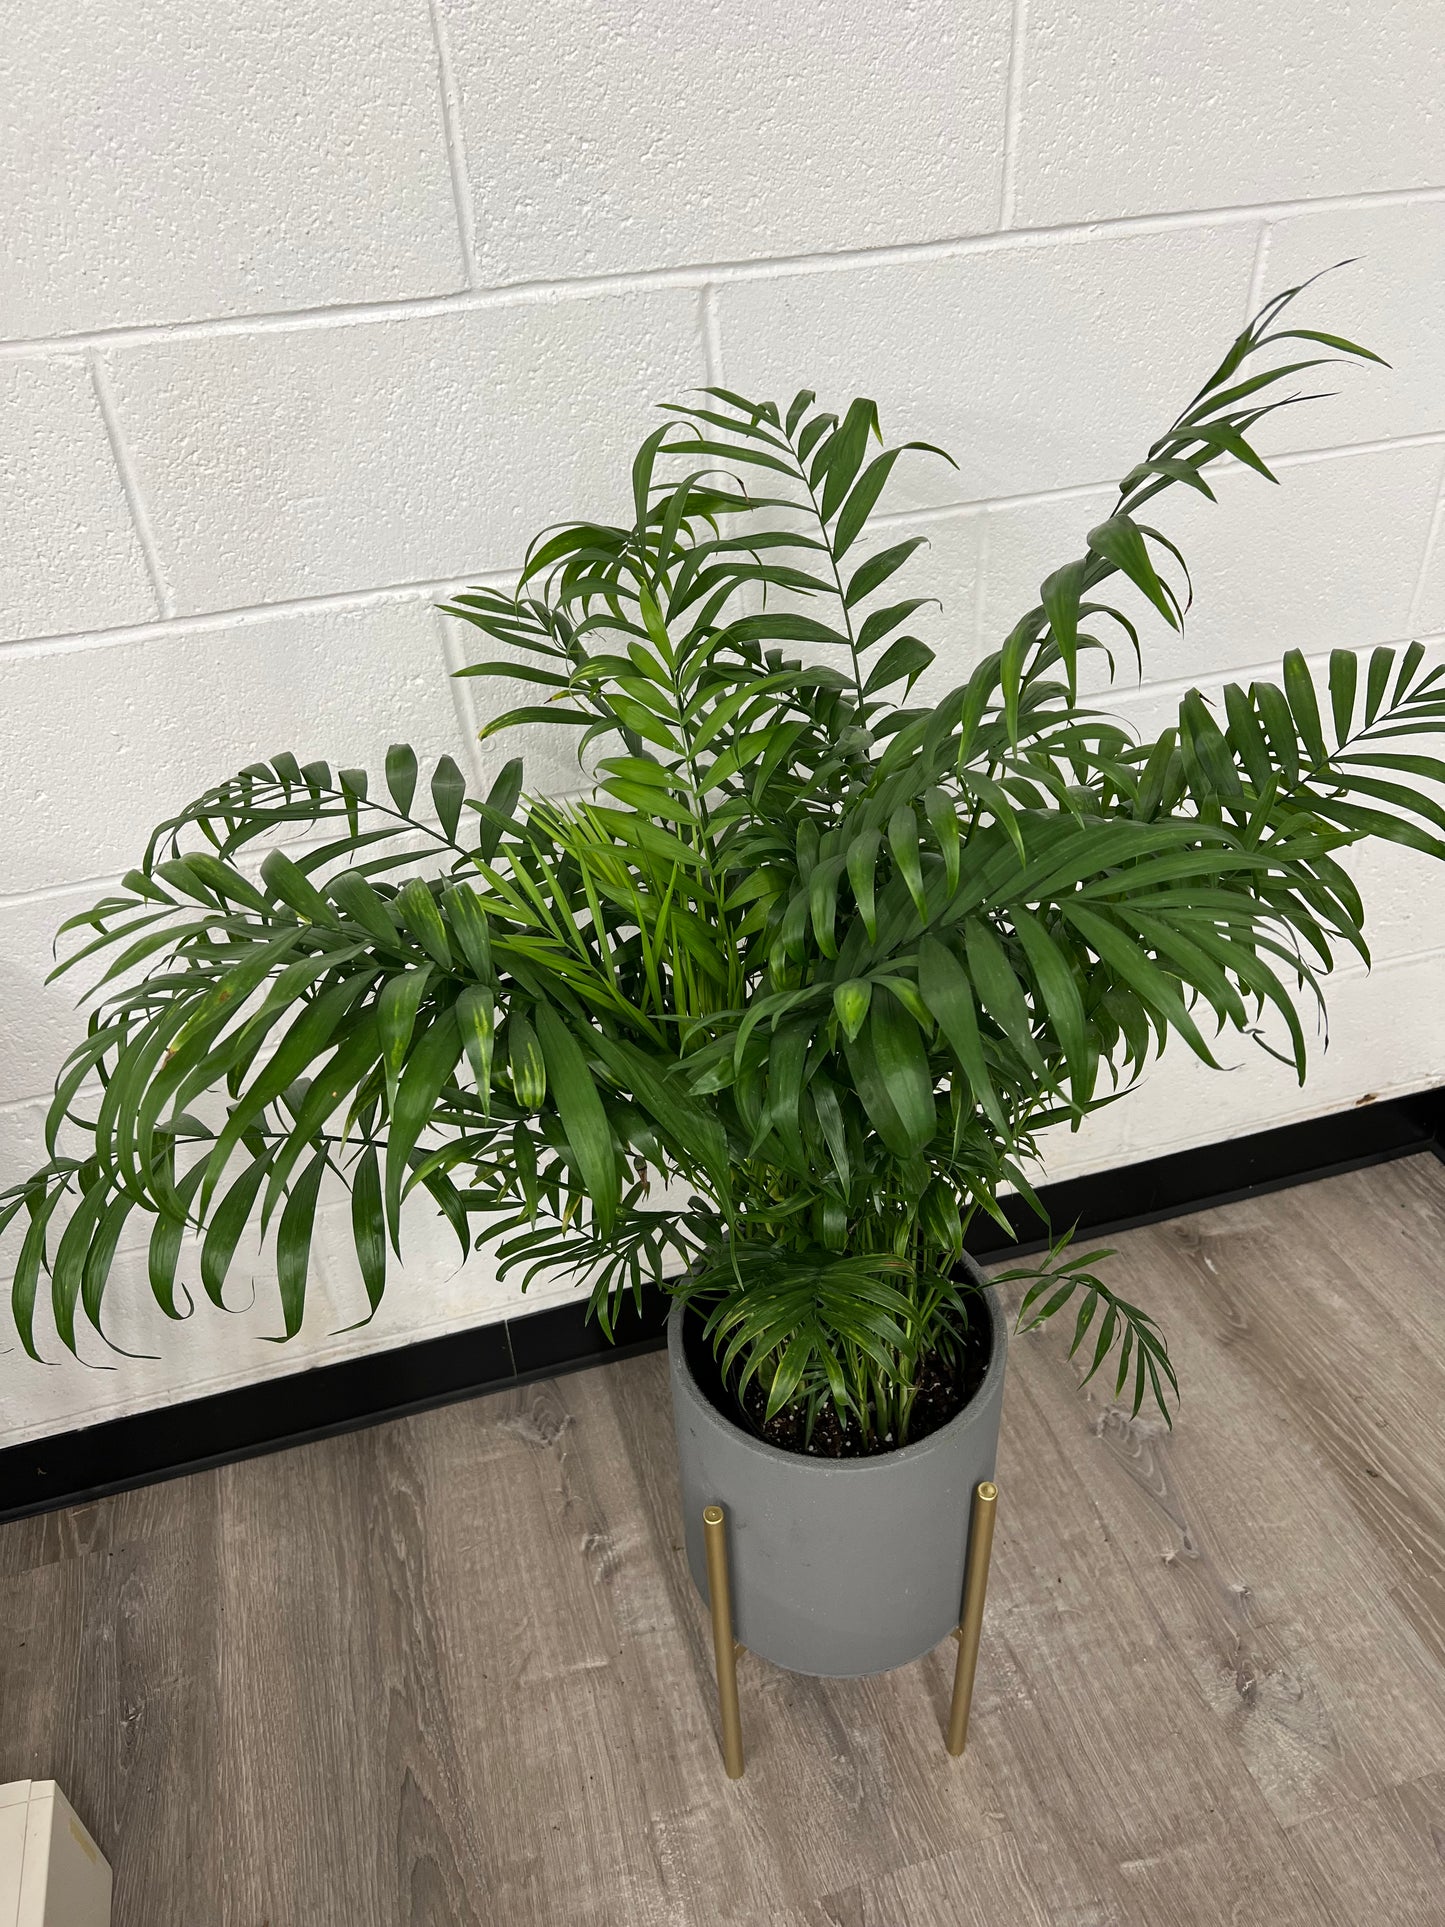 DG-162 (Dypsis lutescens, Areca Palm plant)